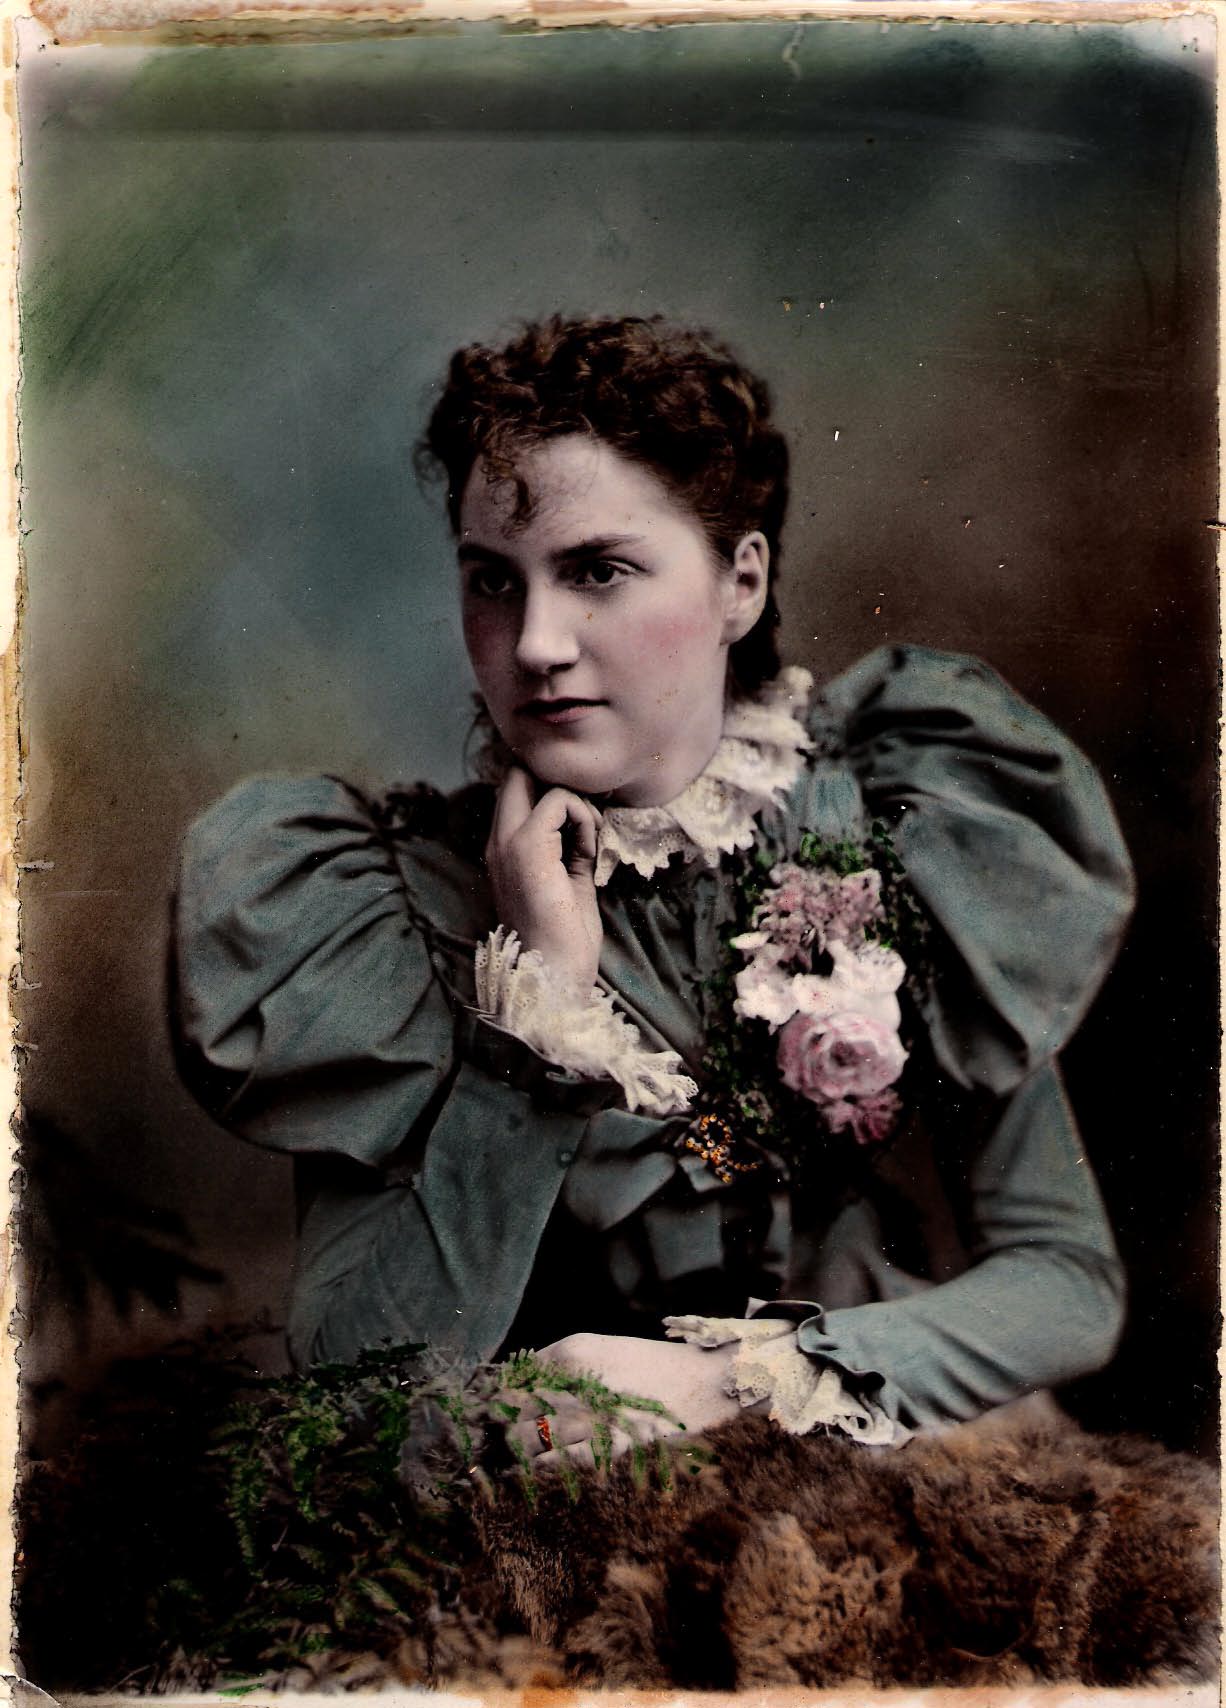 Edith BEARMAN, later Carrington